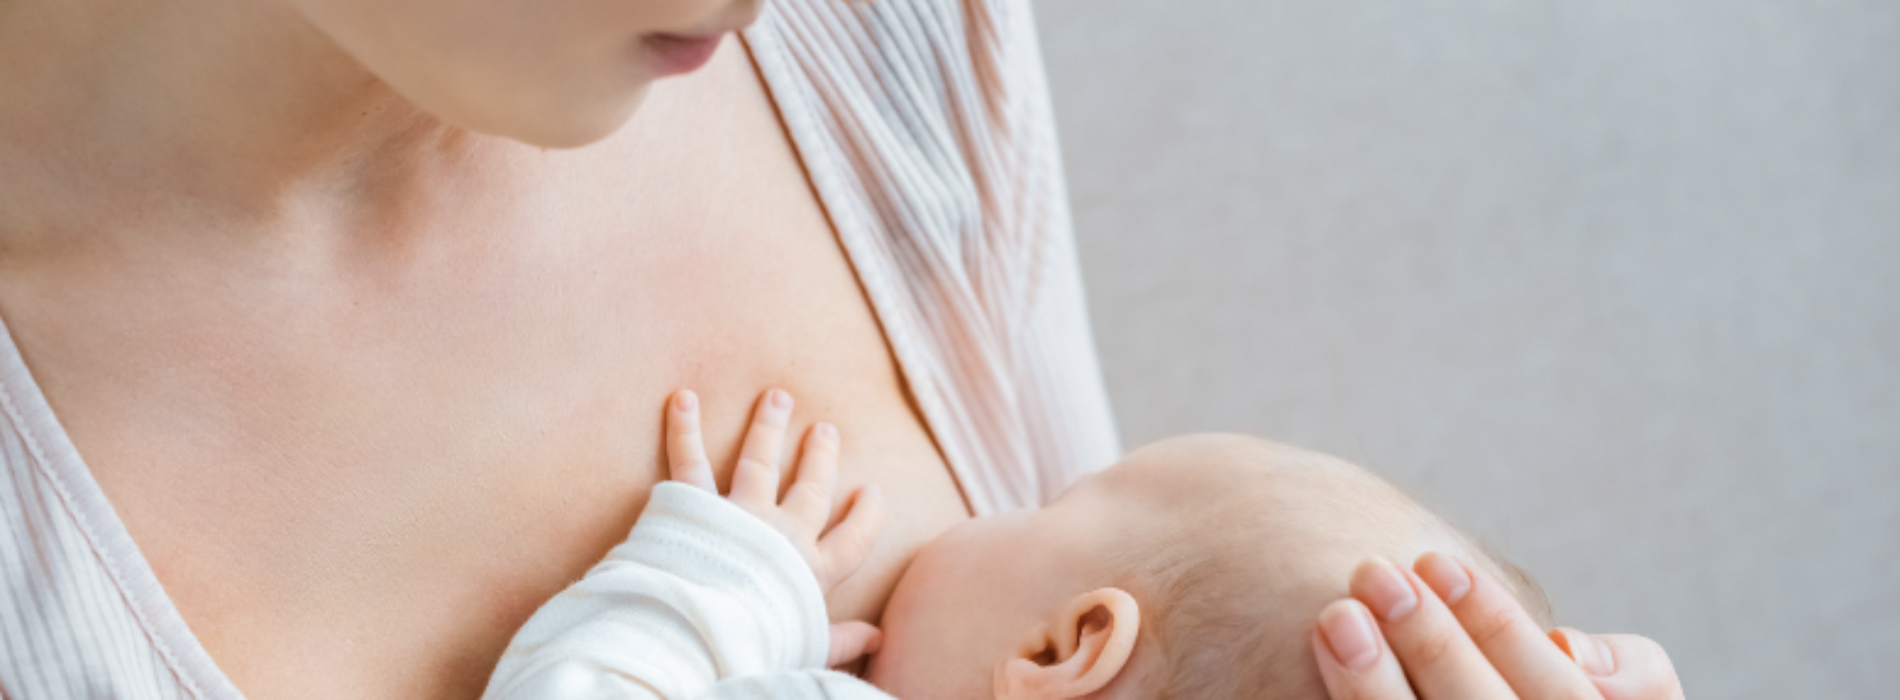 L’Unicef per l’allattamento al seno, al via la sensibilizzazione